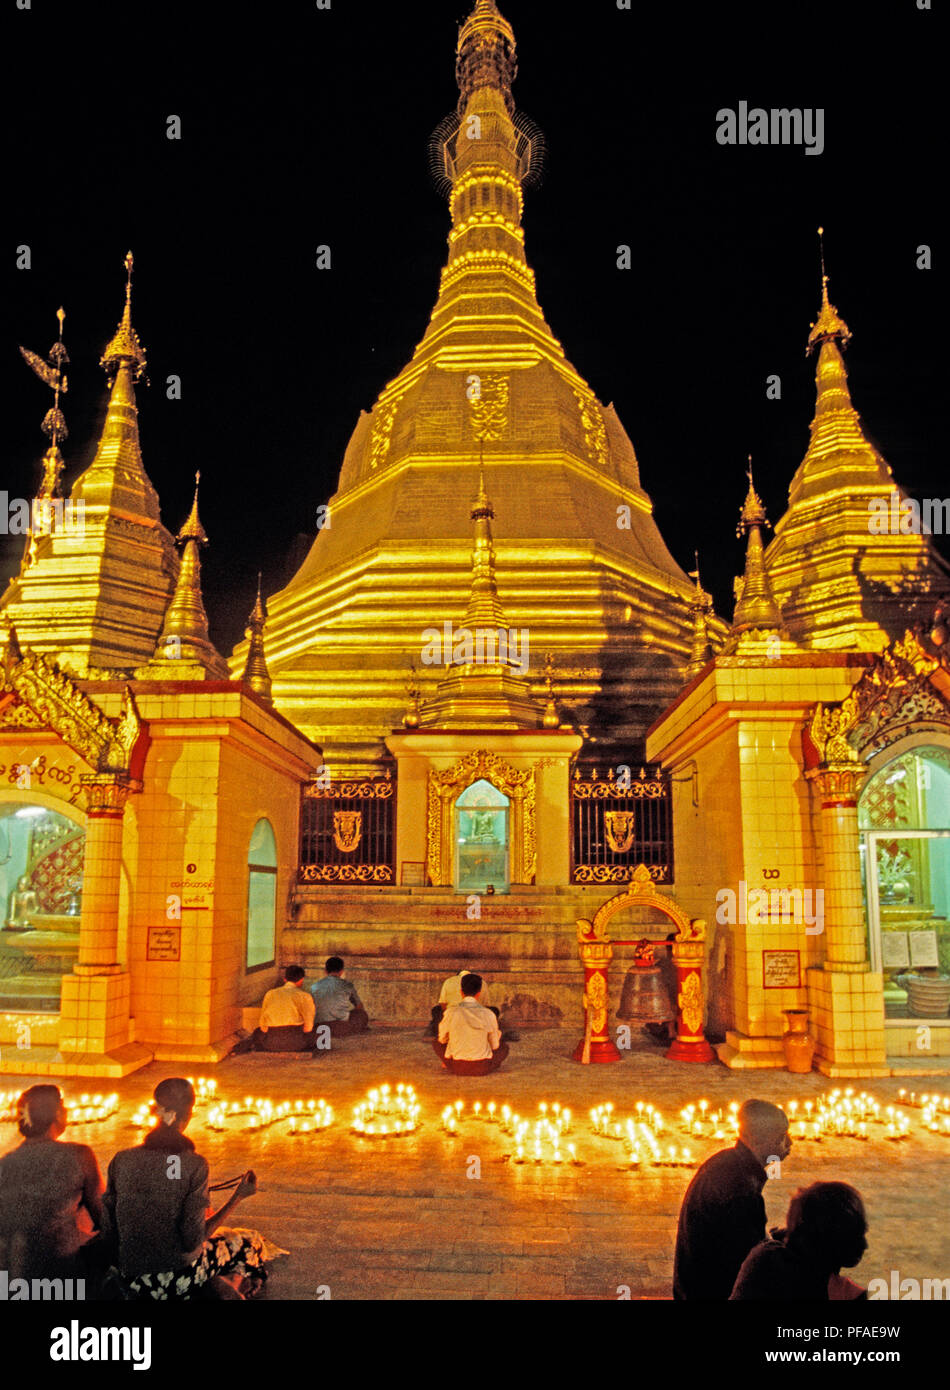 Myanmar (Birmanie) : La pagode Shwedagon avec les fidèles bouddhistes de nuit à Yangon Banque D'Images